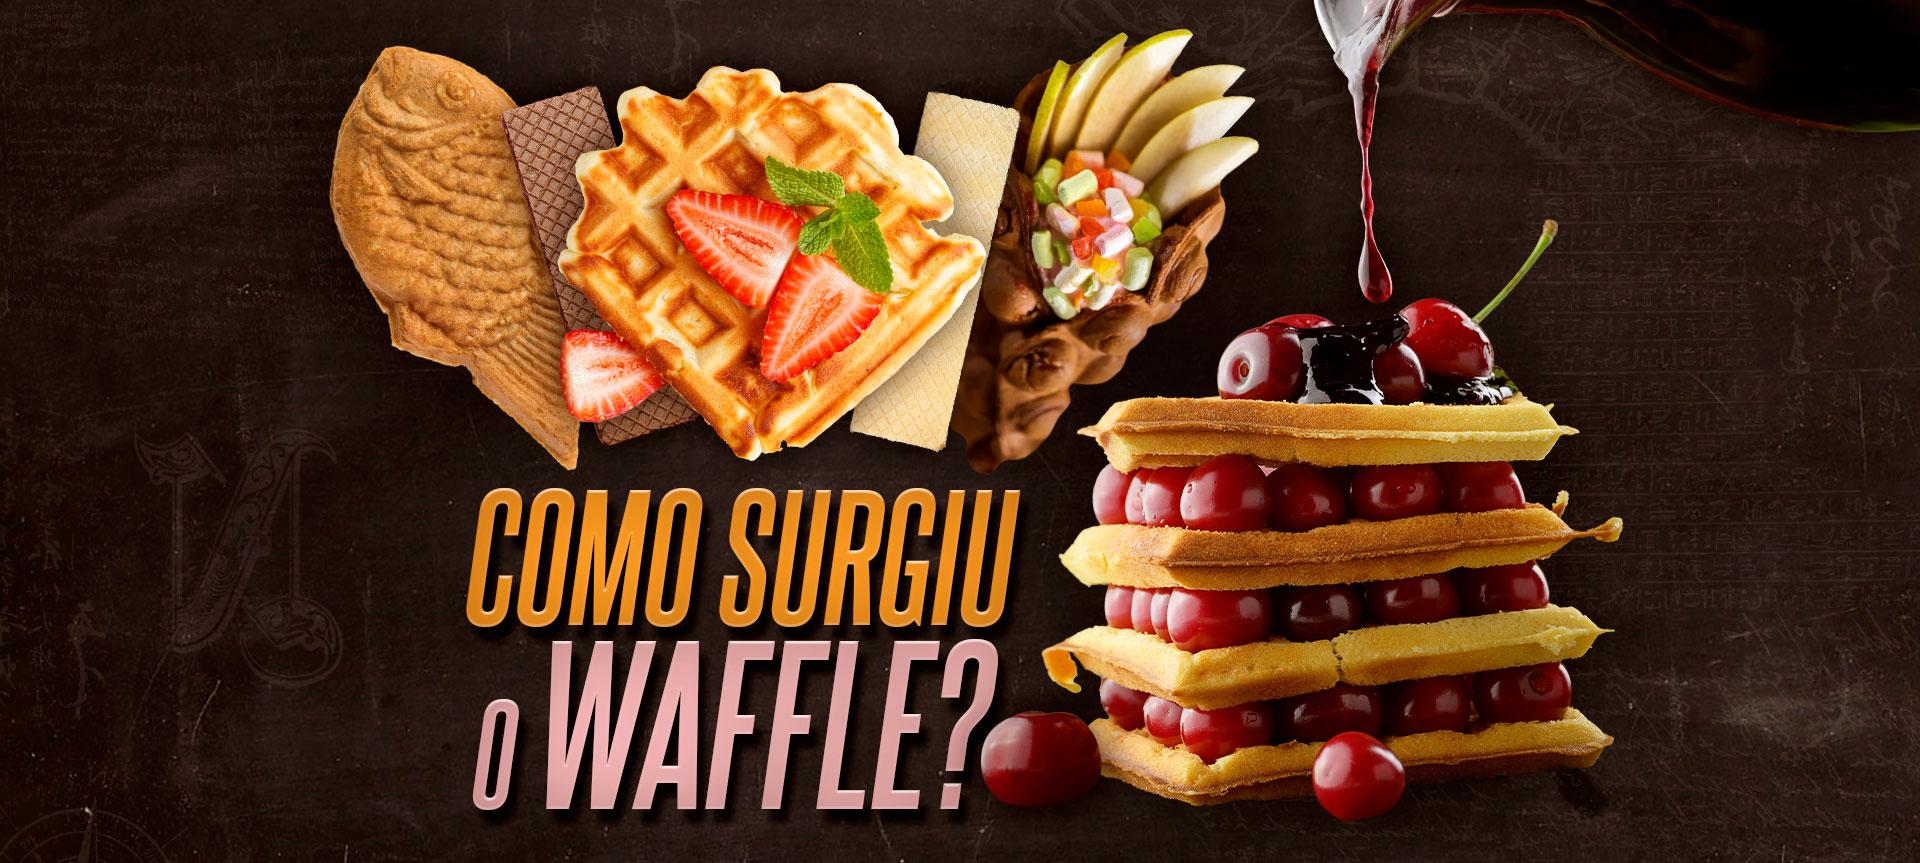 Como surgiu o waffle?